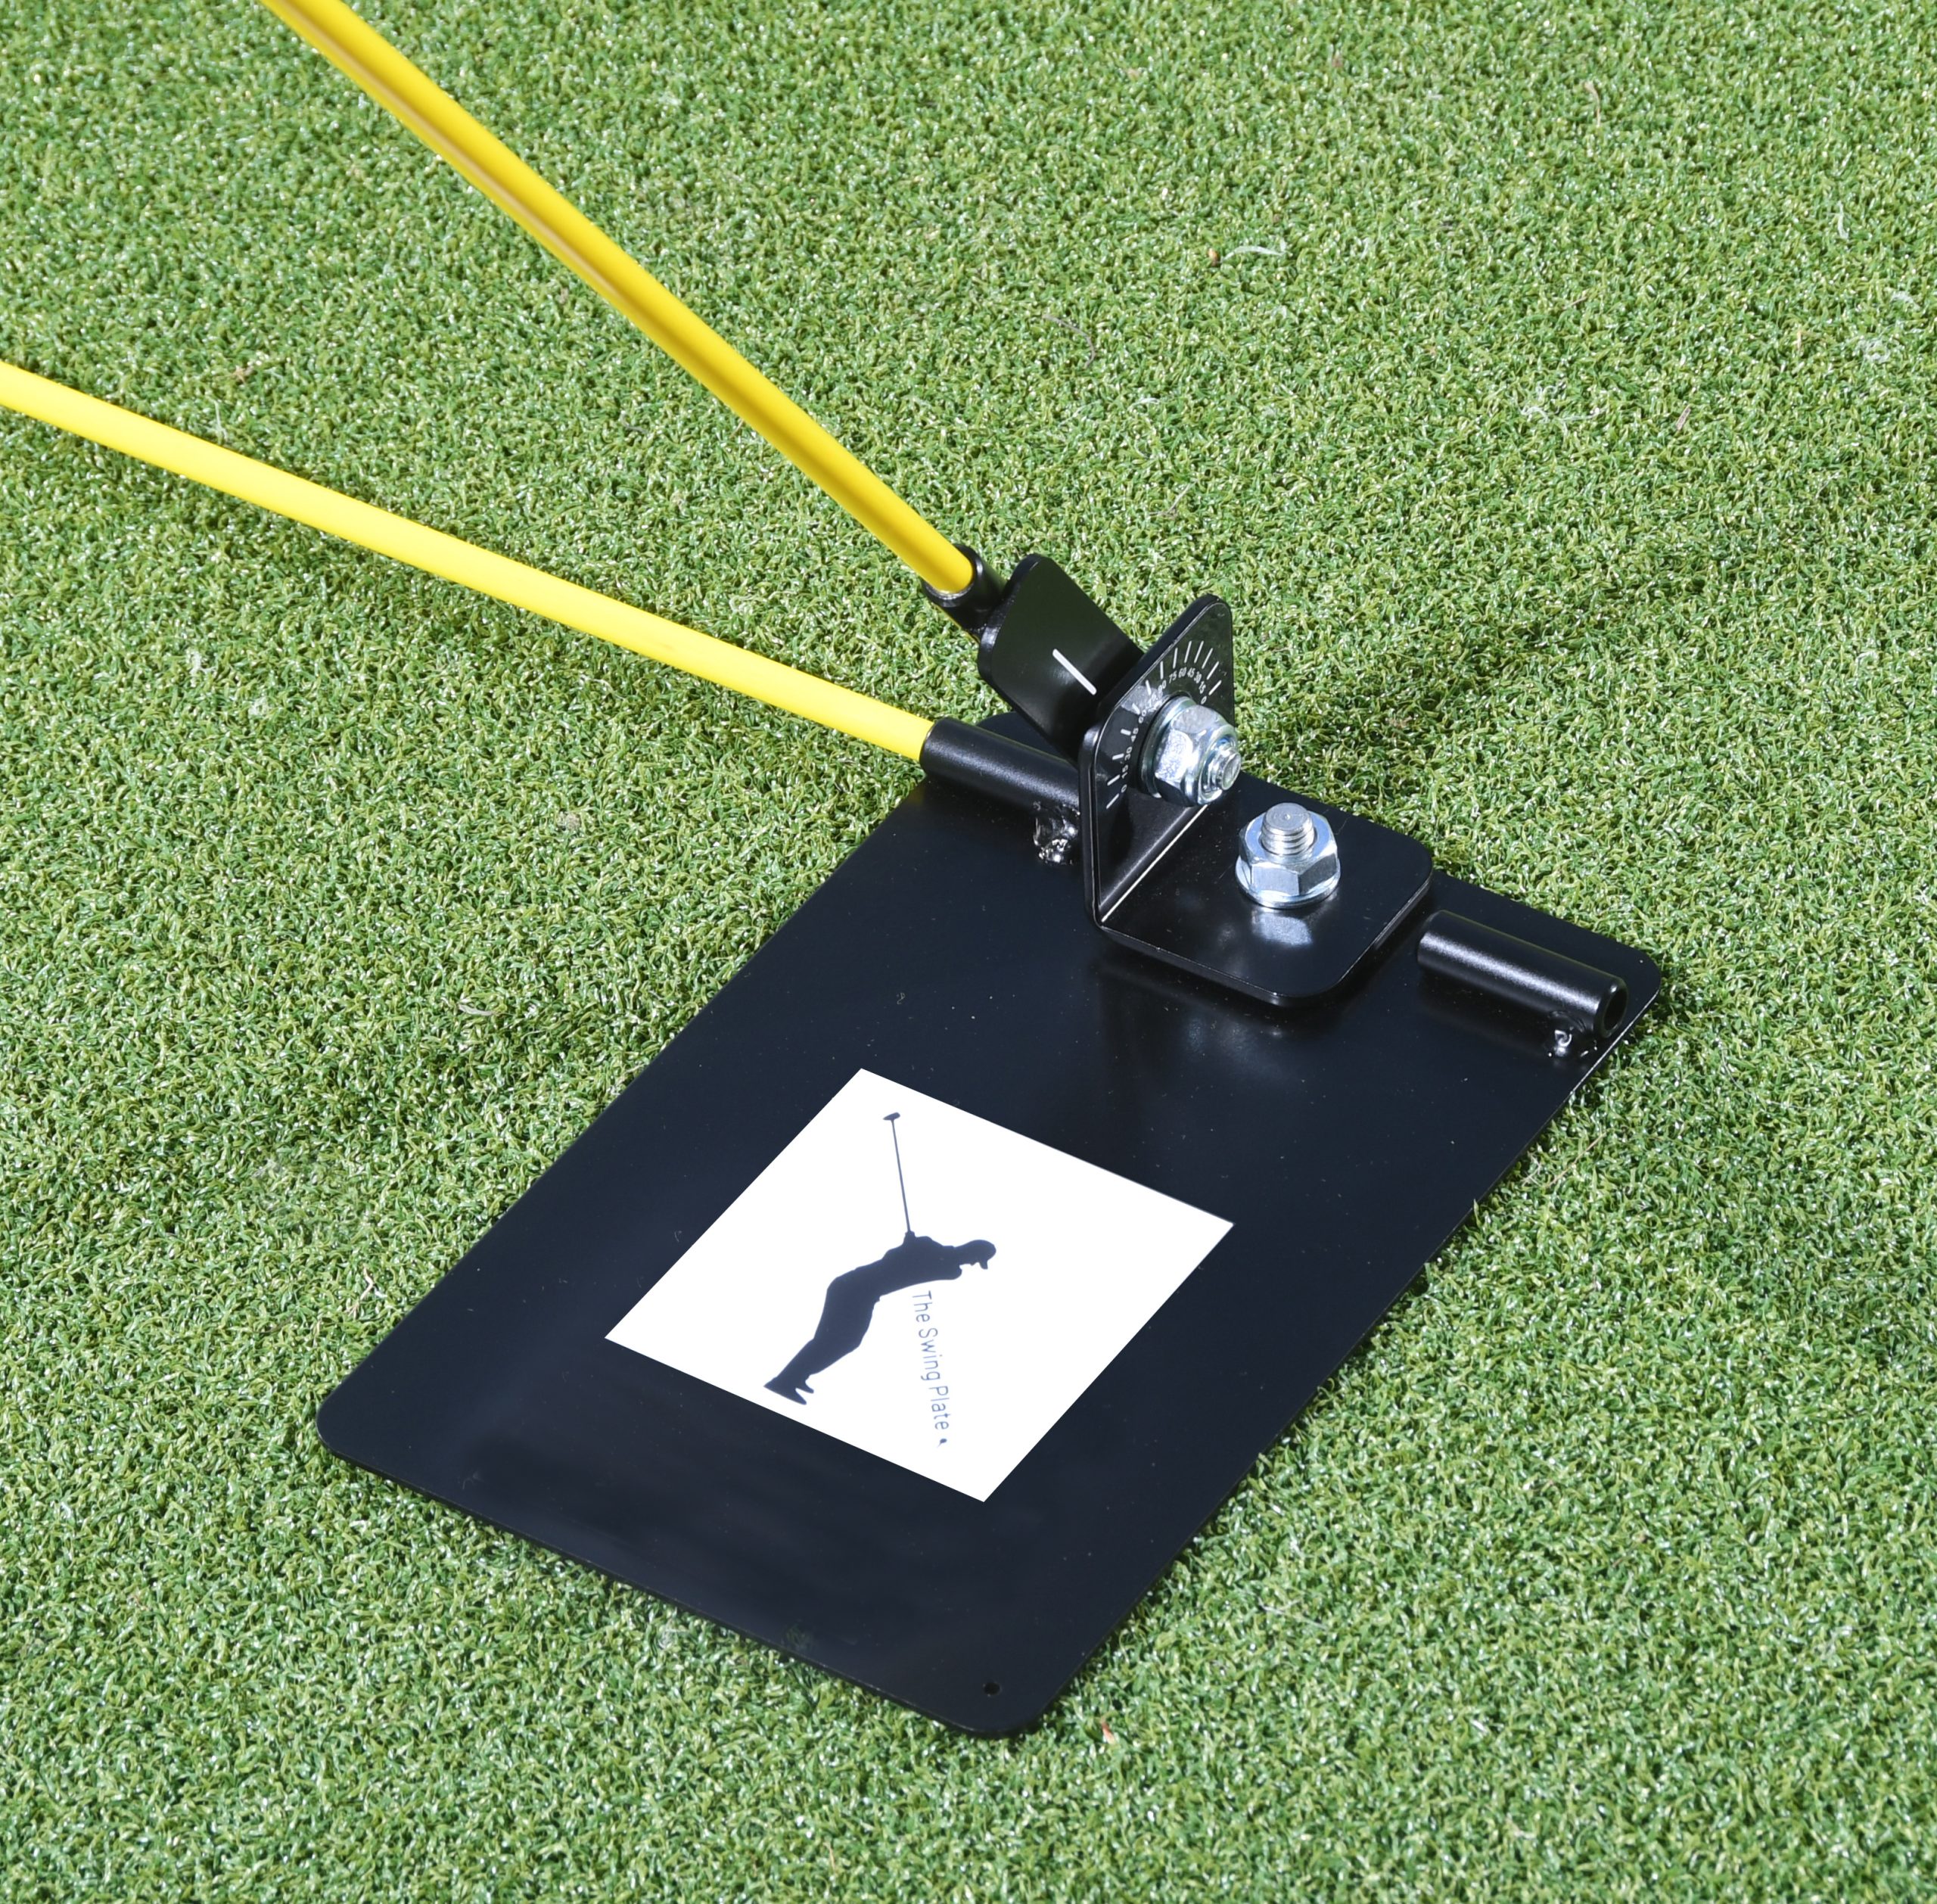 swing plate bästa träningshjälpmedlet i golf